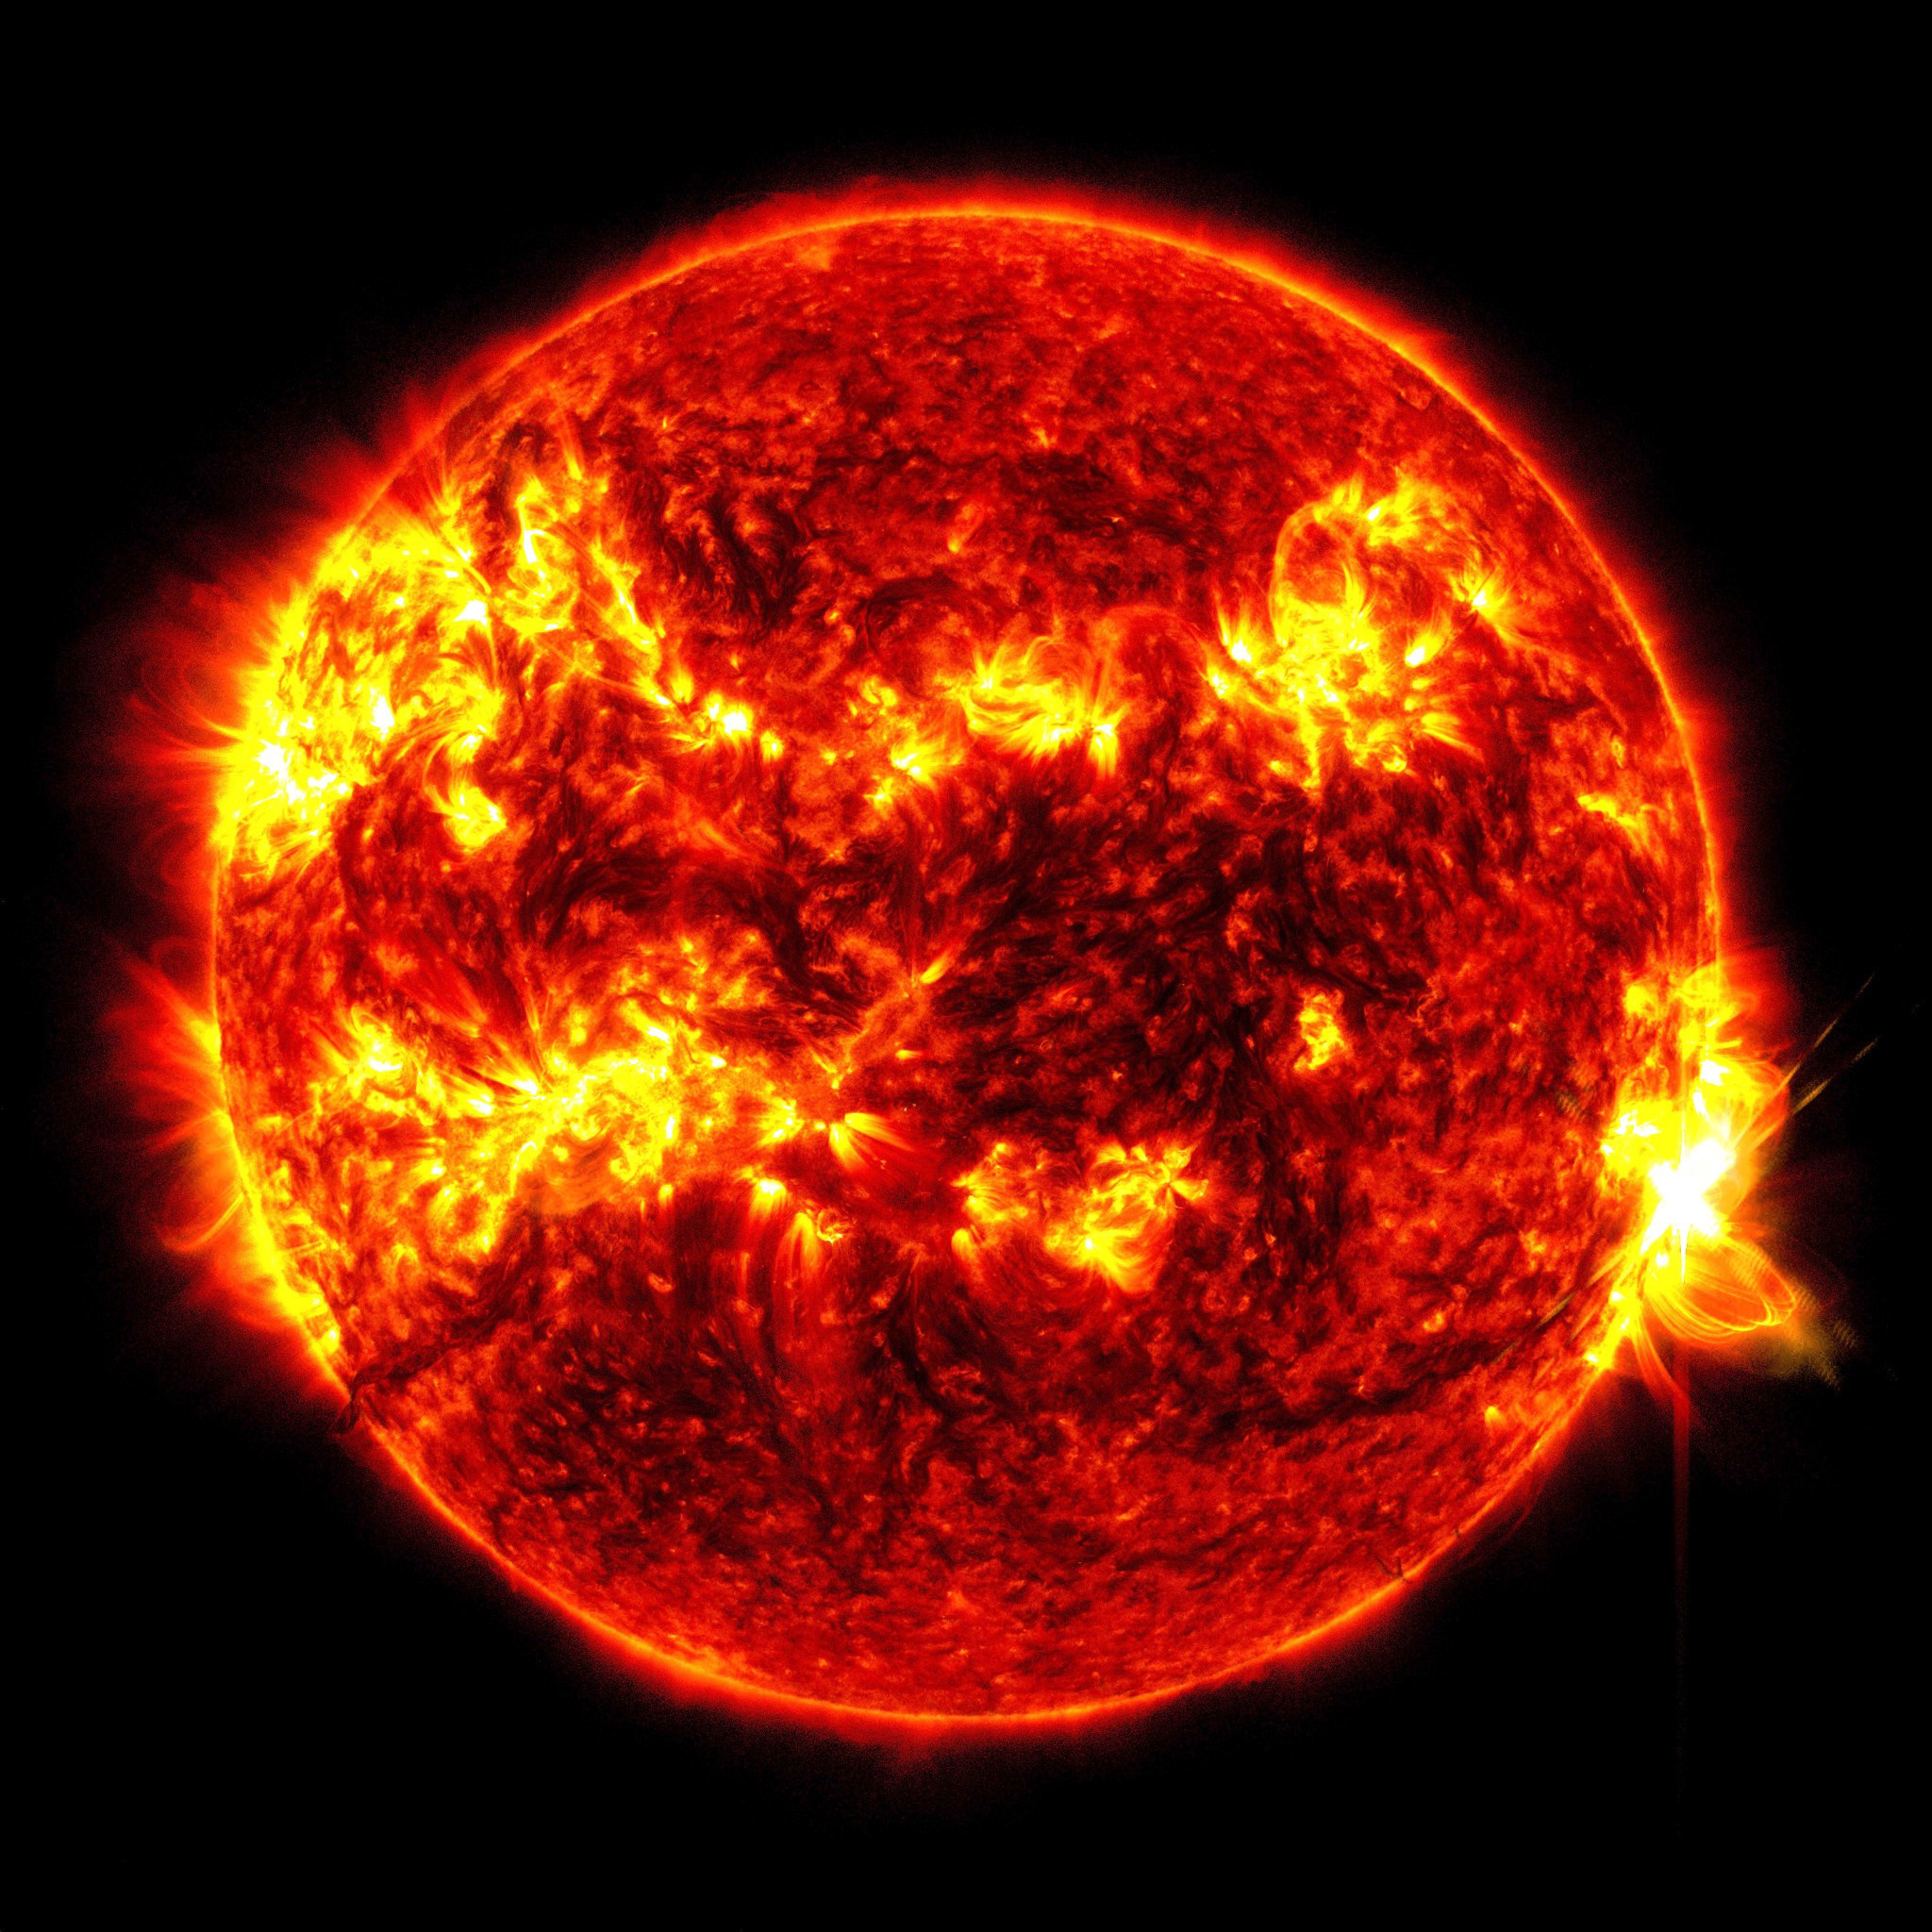 ดวงอาทิตย์ปลดปล่อยพลังงานจากการระเบิดแม่เหล็กที่ใหญ่ที่สุดในเกือบทศวรรษ แต่โลกควรปลอดภัย